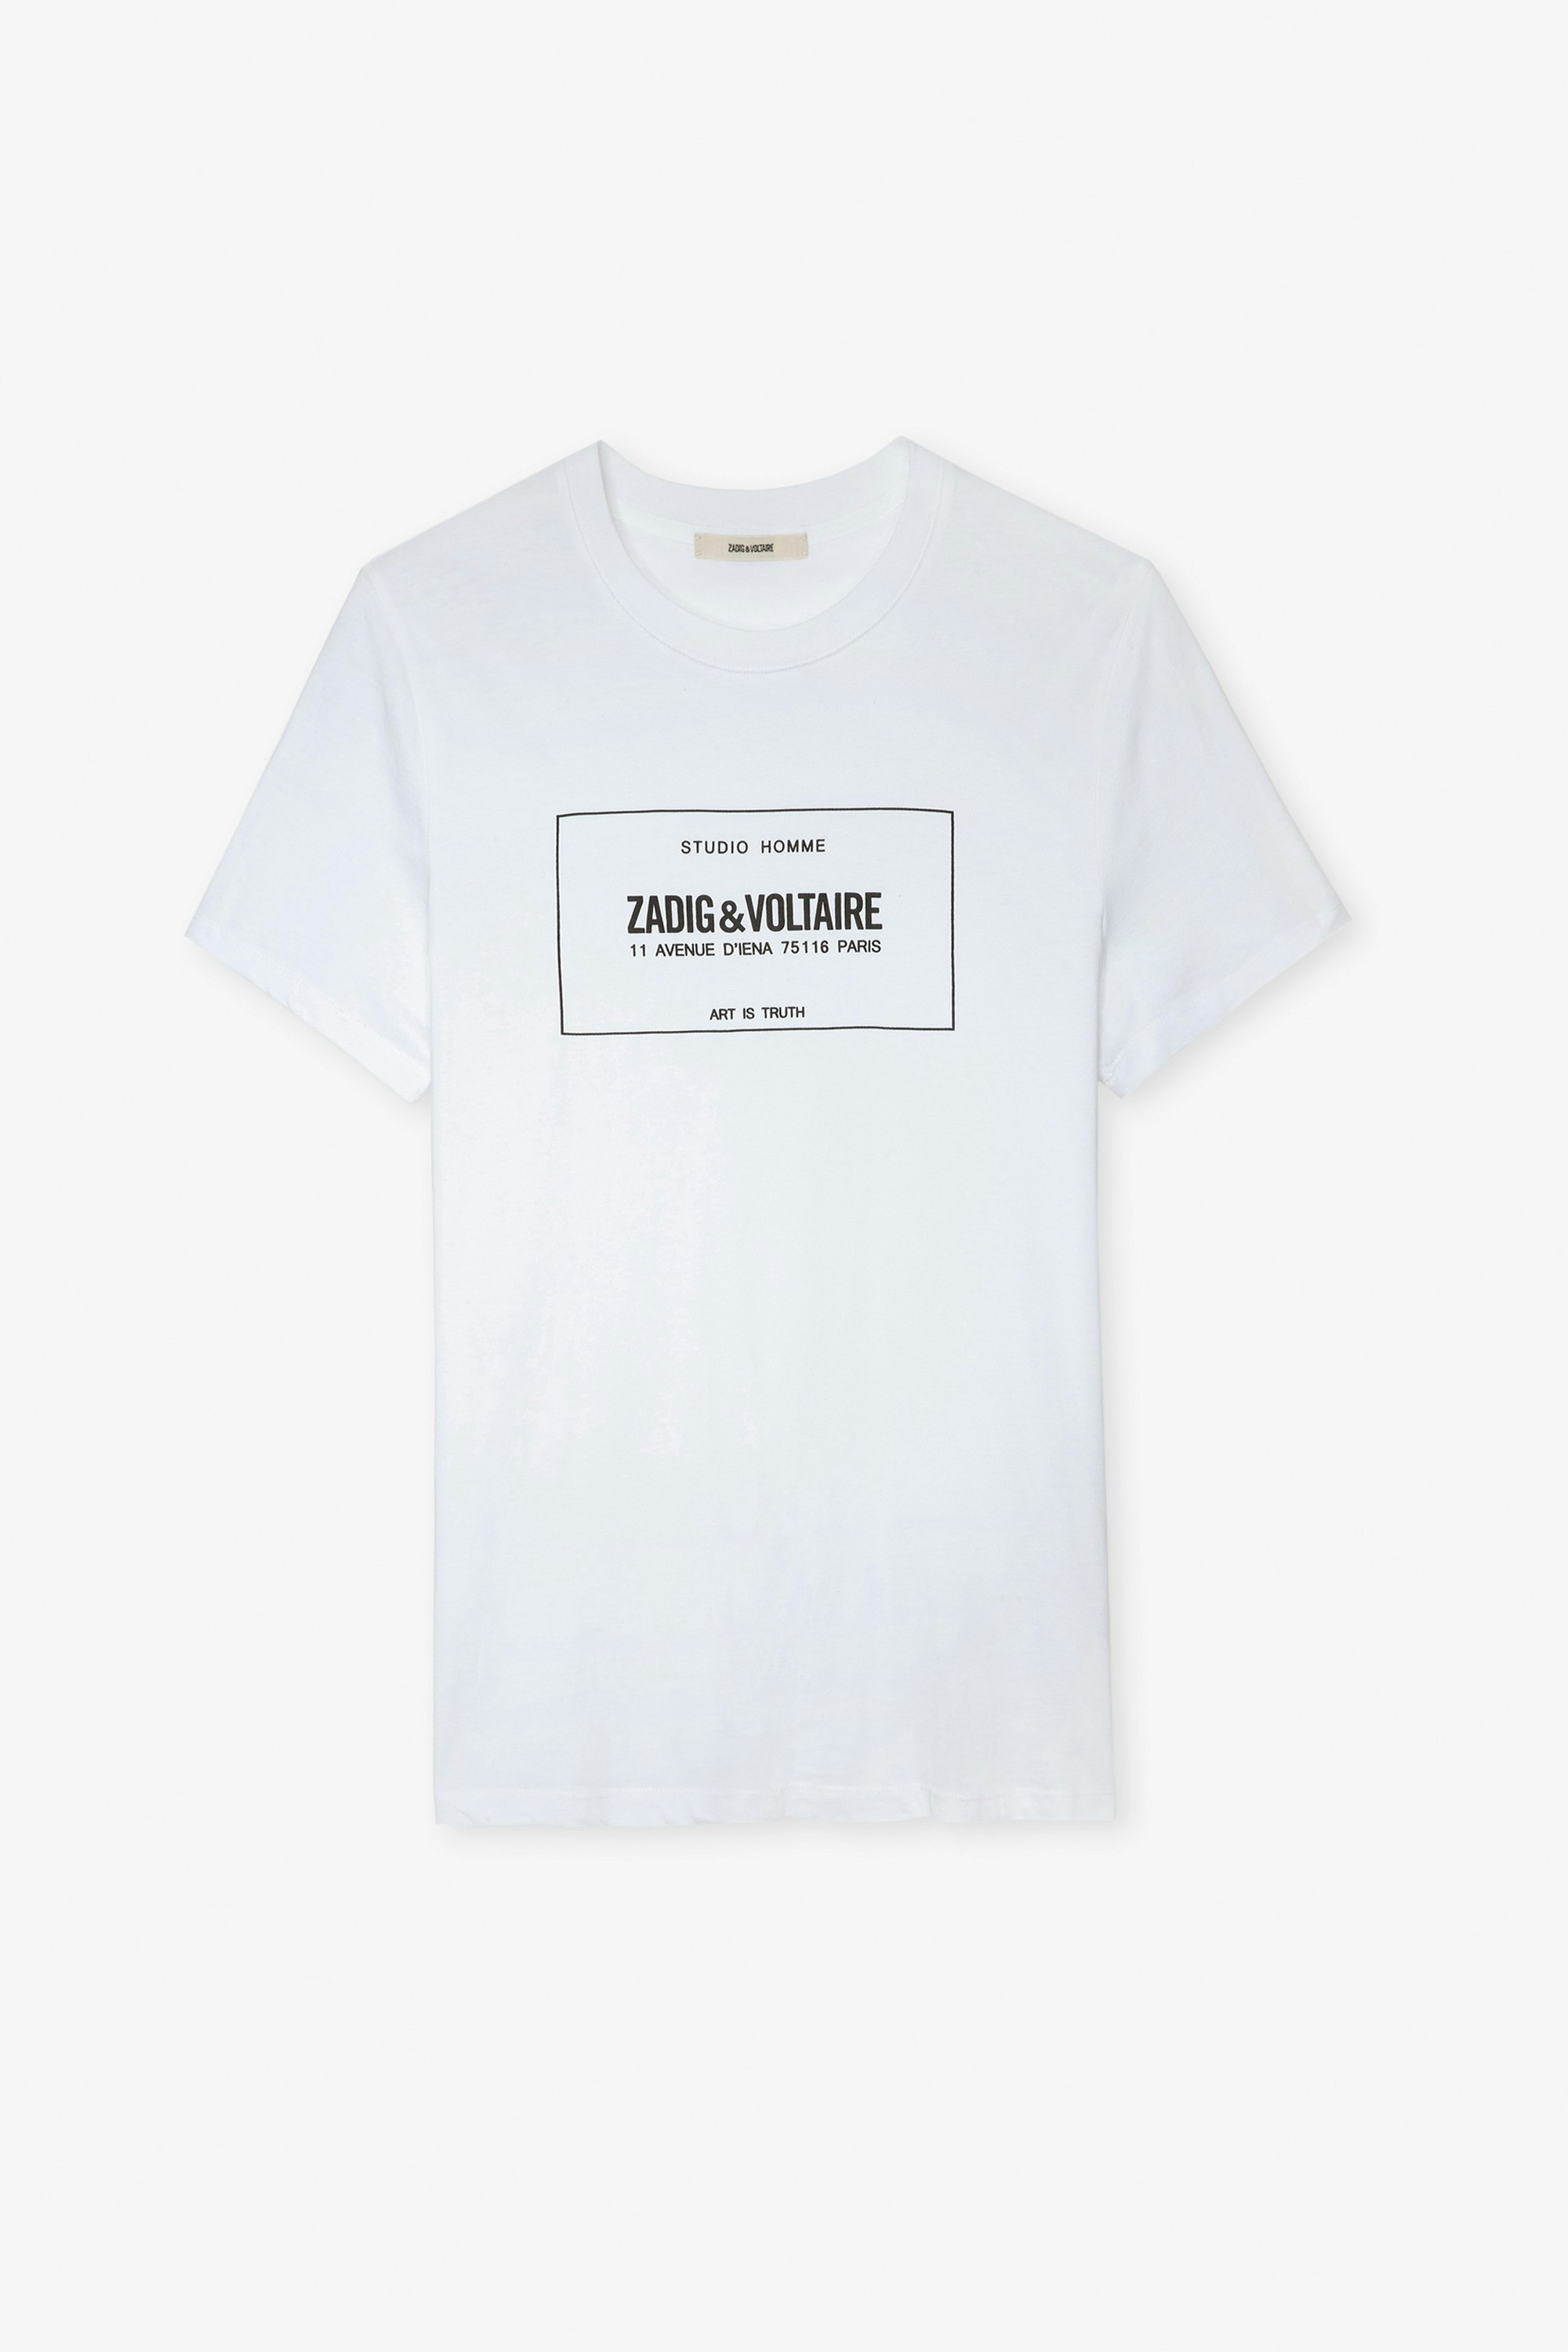 Camiseta Ted - Camiseta blanca de algodón con escudo de la marca para hombre